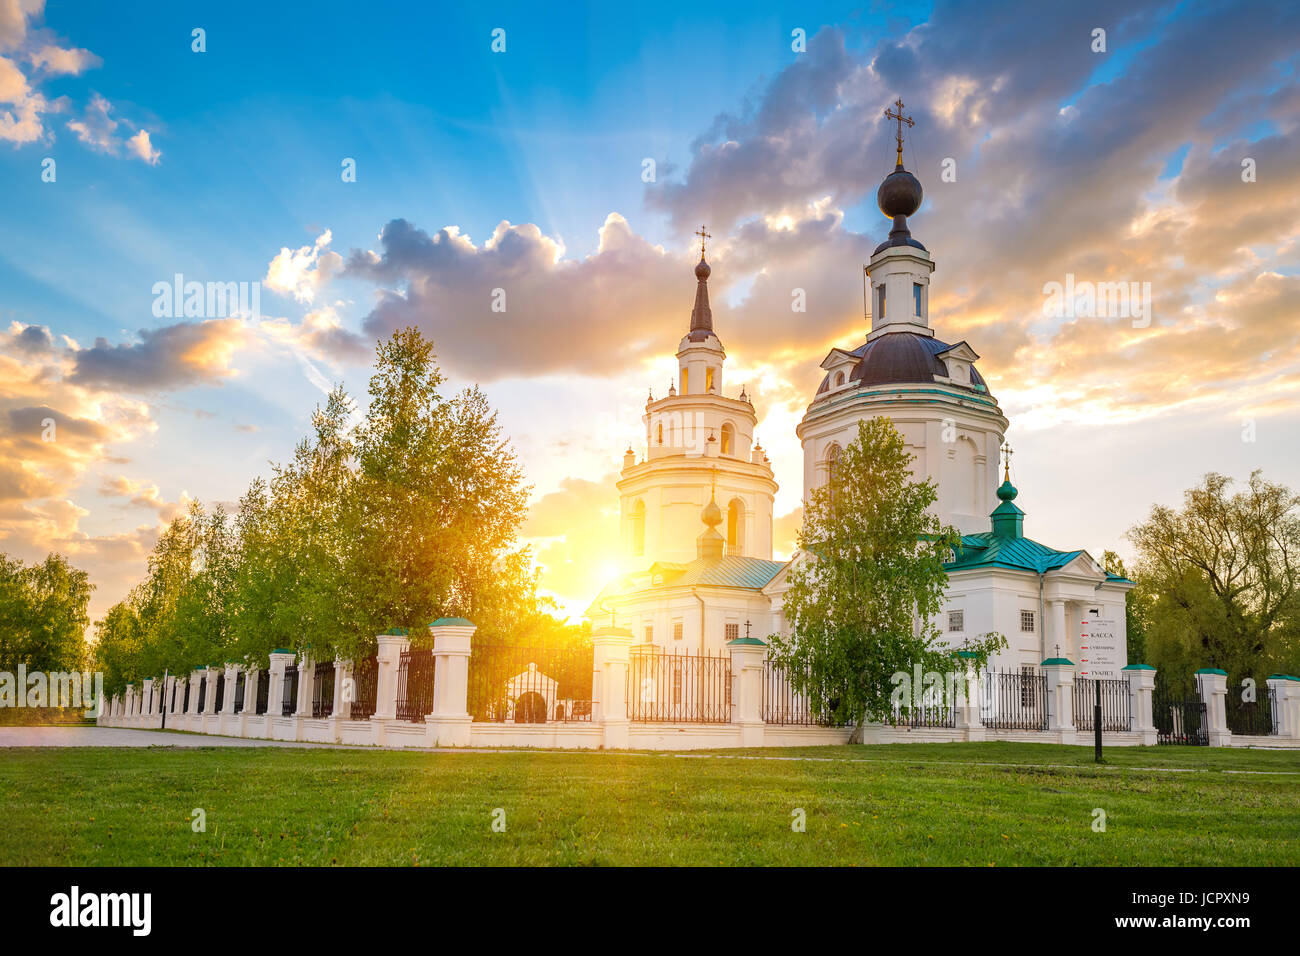 Nuages sur l'église orthodoxe russe au coucher du soleil. Bolshoe Boldino, Russie Banque D'Images